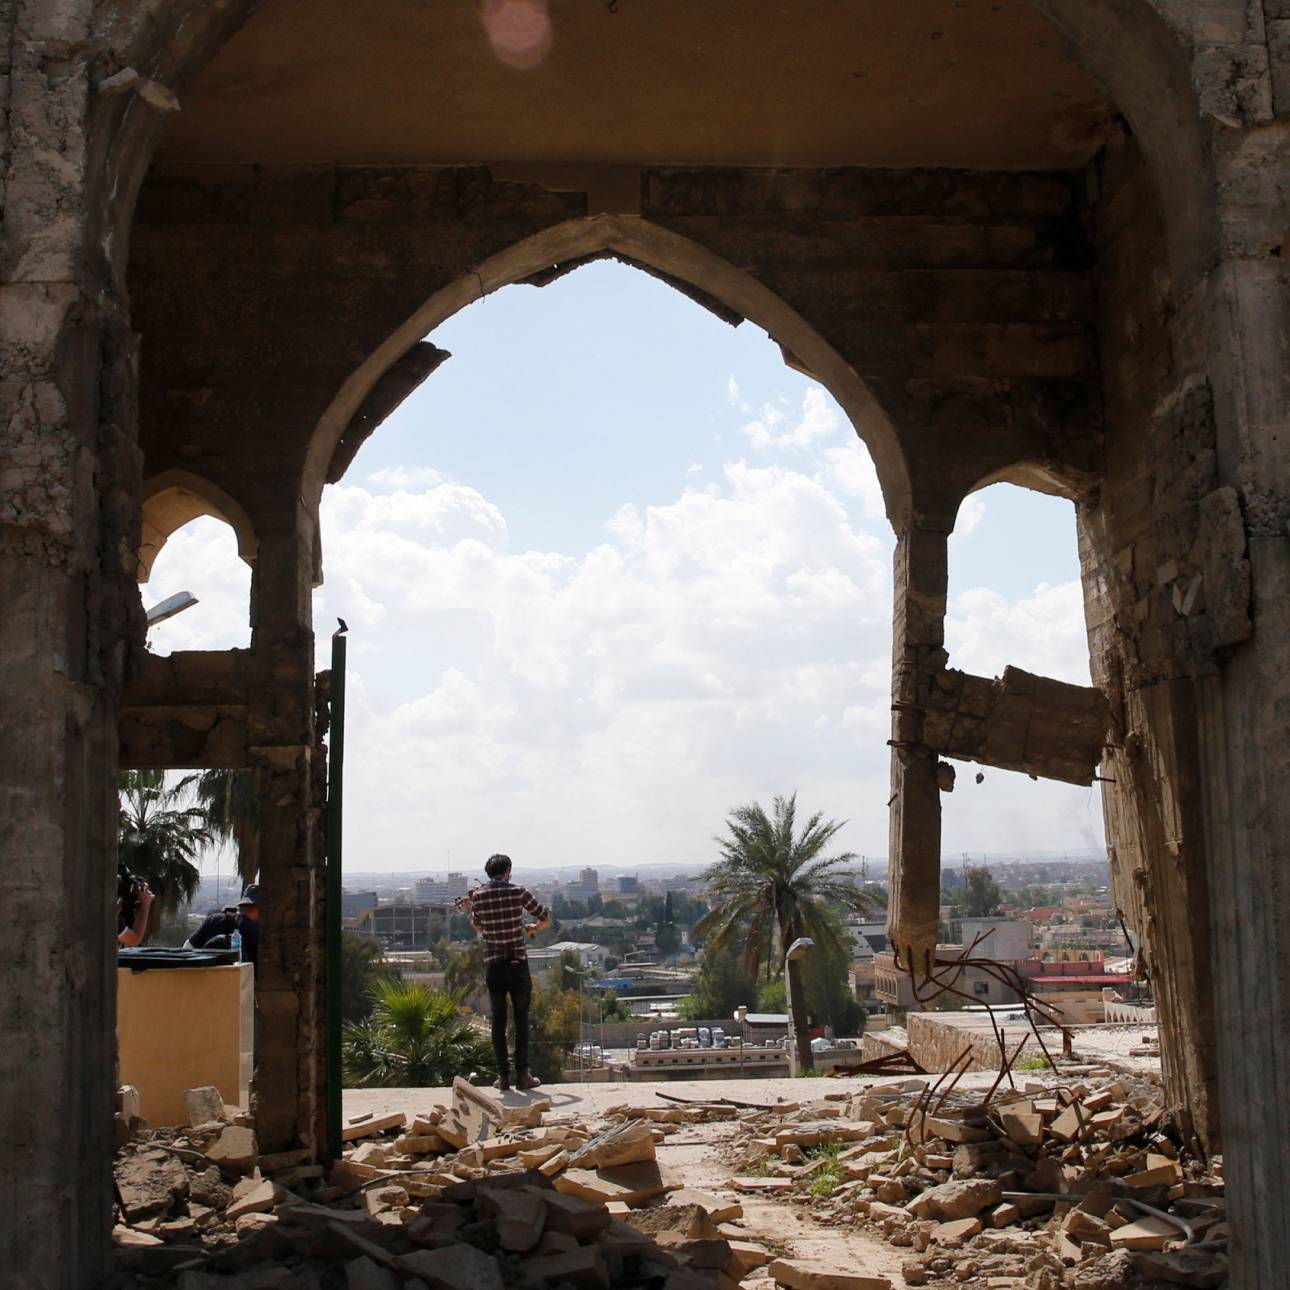 SOS για την καταστροφή μνημείων από τον ISIS στέλνουν διεθνείς προσωπικότητες μέσω του CNN Greece